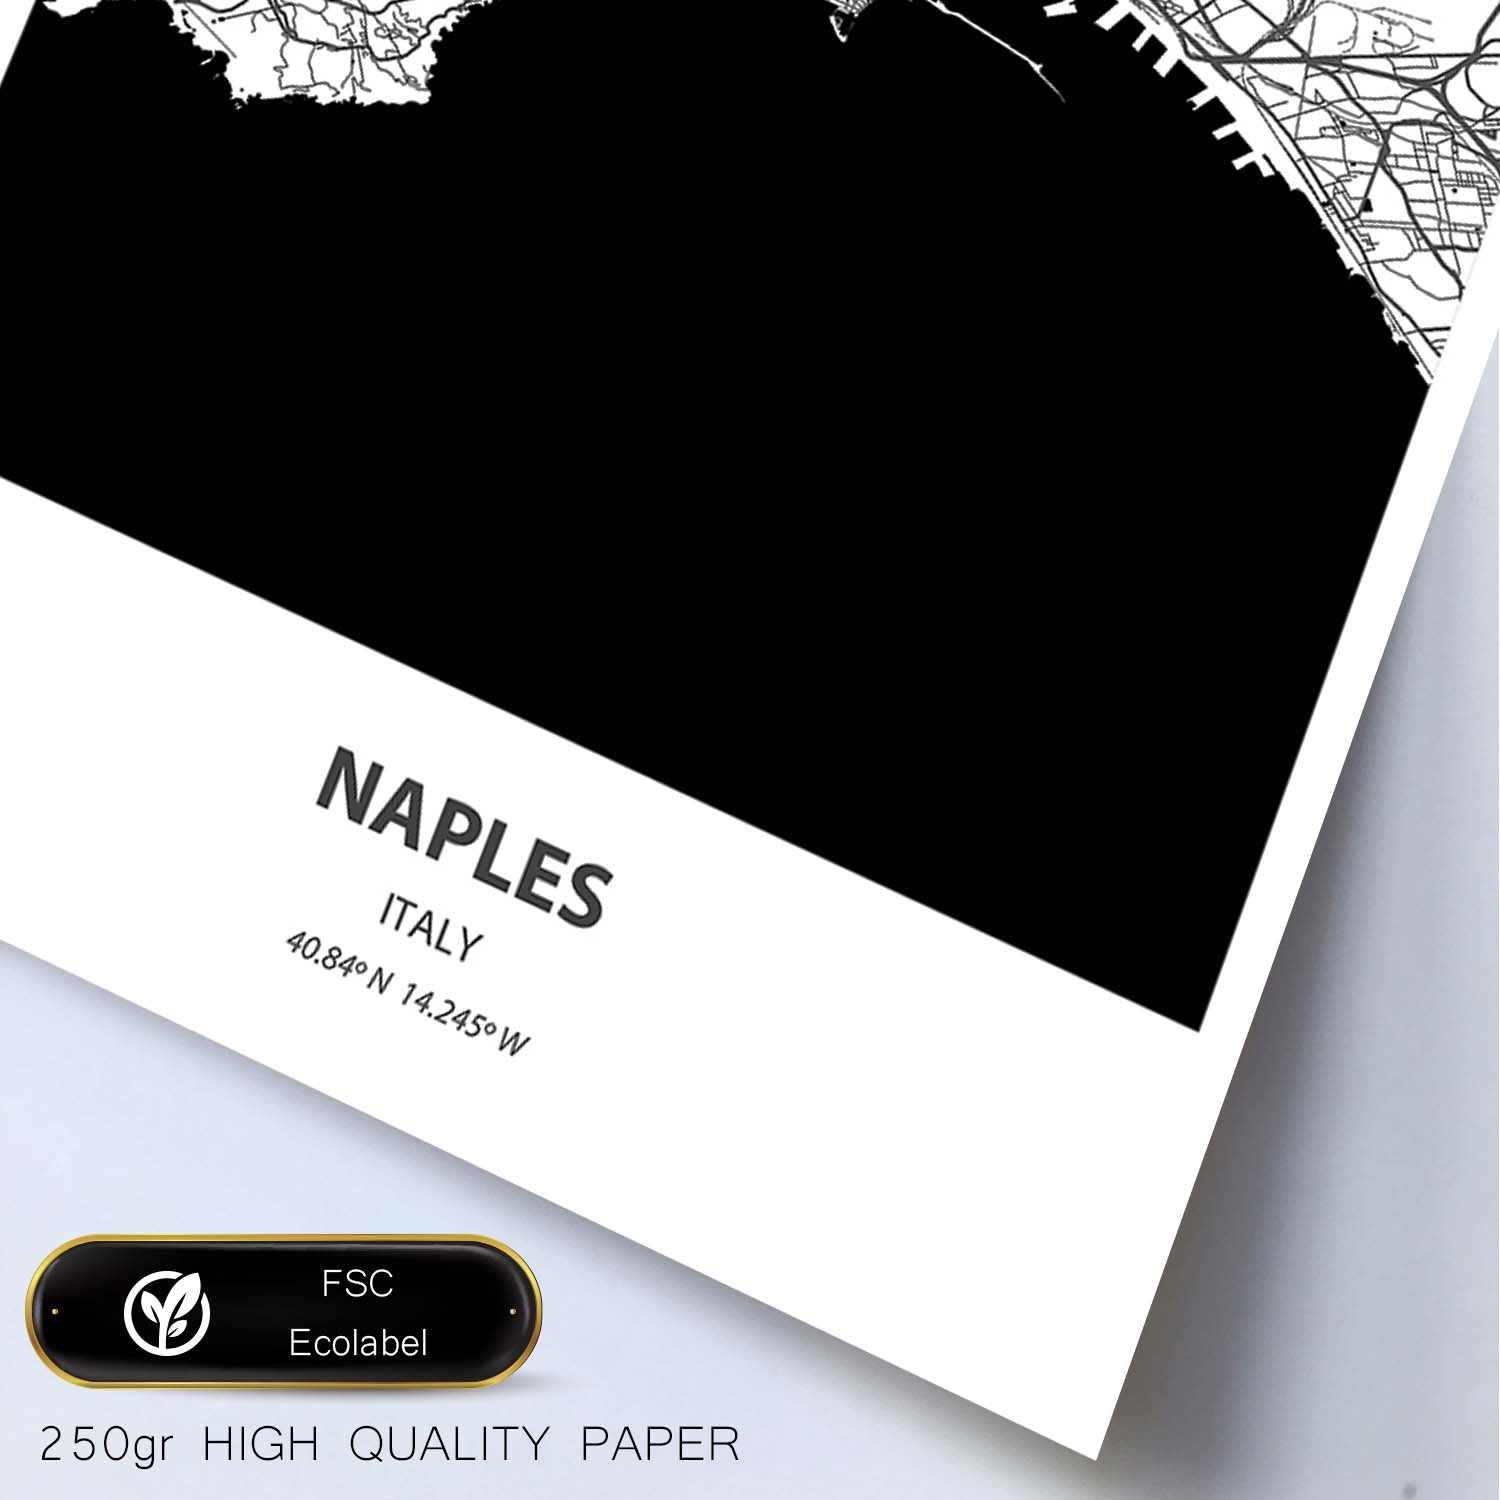 Poster con mapa de Naples - Italia. Láminas de ciudades de Italia con mares y ríos en color negro.-Artwork-Nacnic-Nacnic Estudio SL